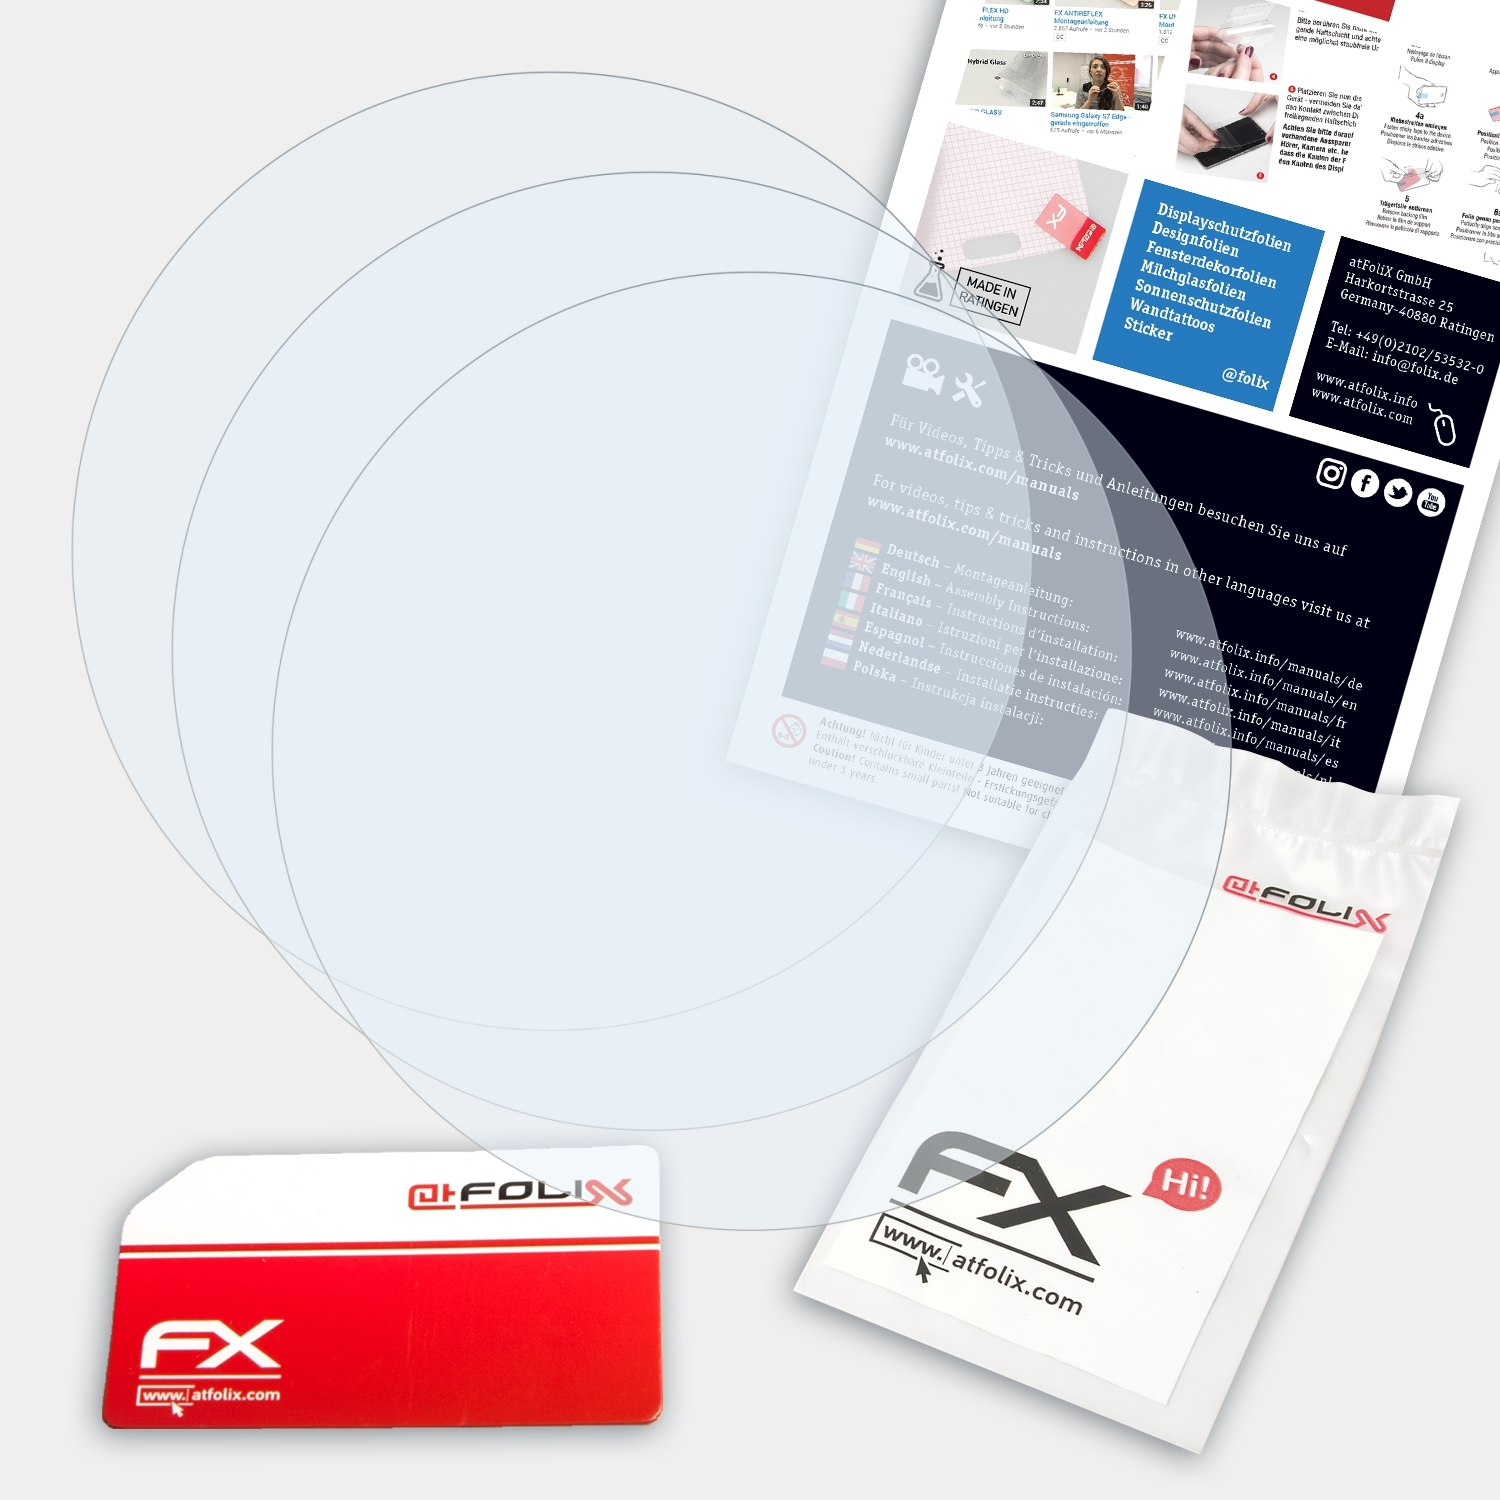 ATFOLIX 3x FX-Clear Displayschutz(für Swatch C-Grey)